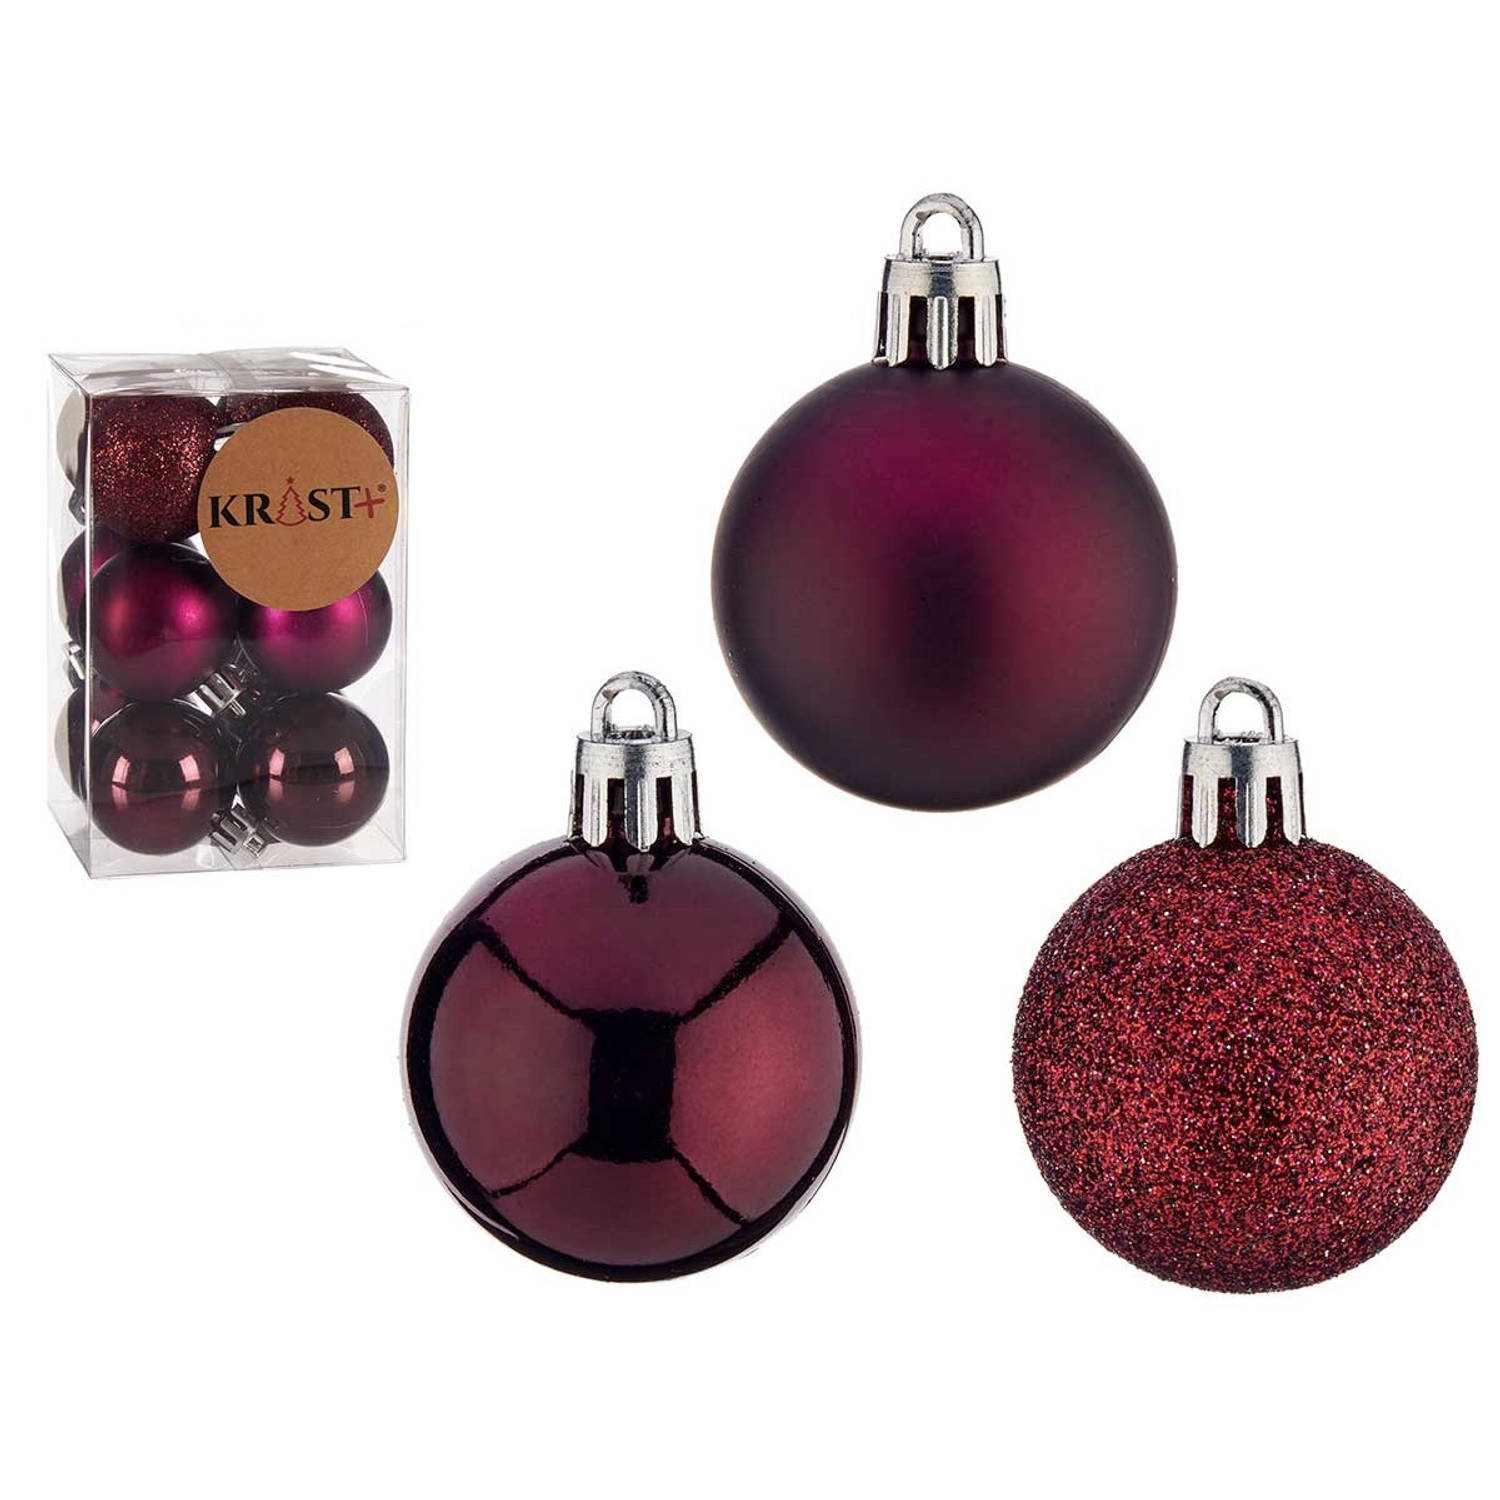 Arte R kleine kerstballen - 12x stuks - wijn/bordeaux rood - kunststof - 4 cm